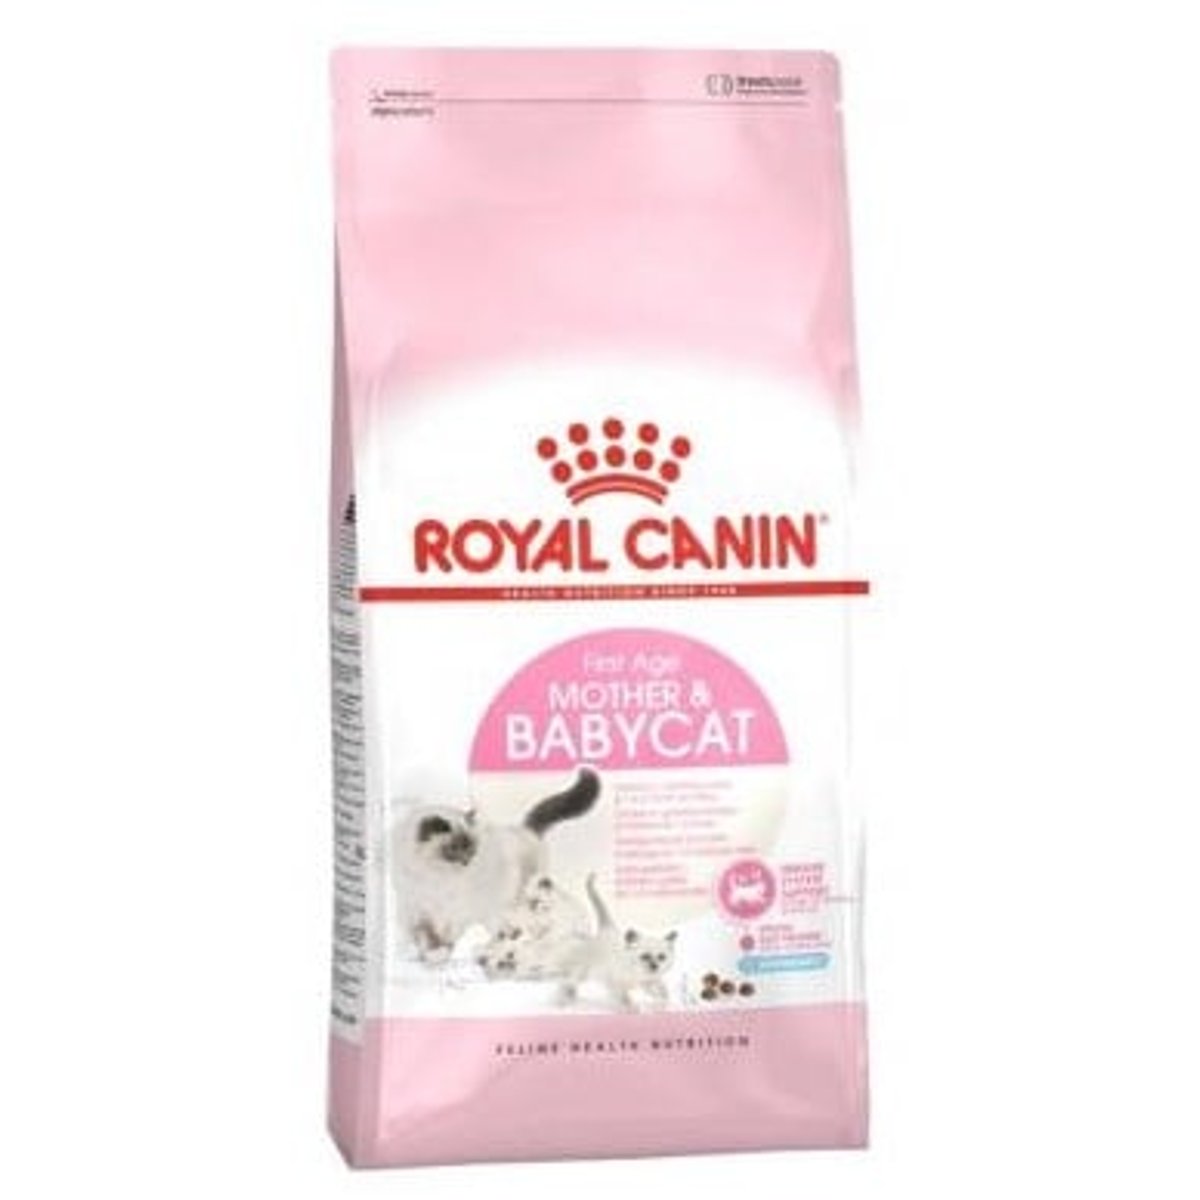 Royal Canin Babycat granule pro koťata